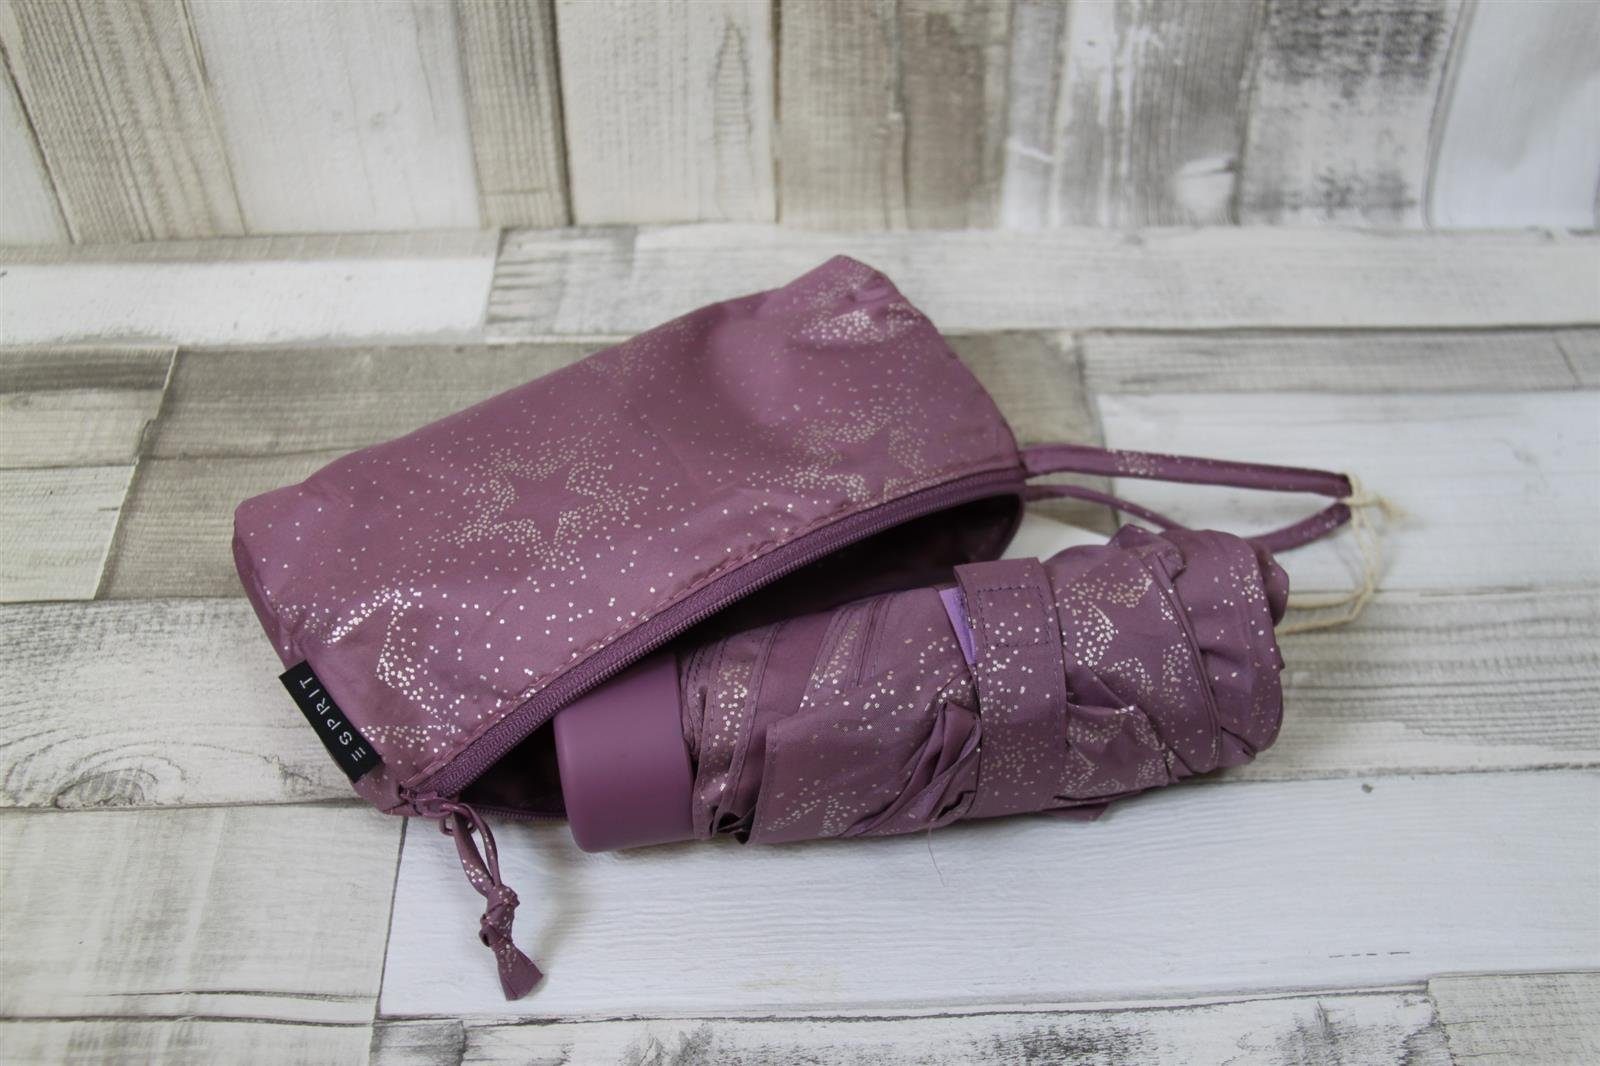 Taschenschirm ESPRIT Taschenregenschirm Tasche Esprit in lila Glitzersternchen einer